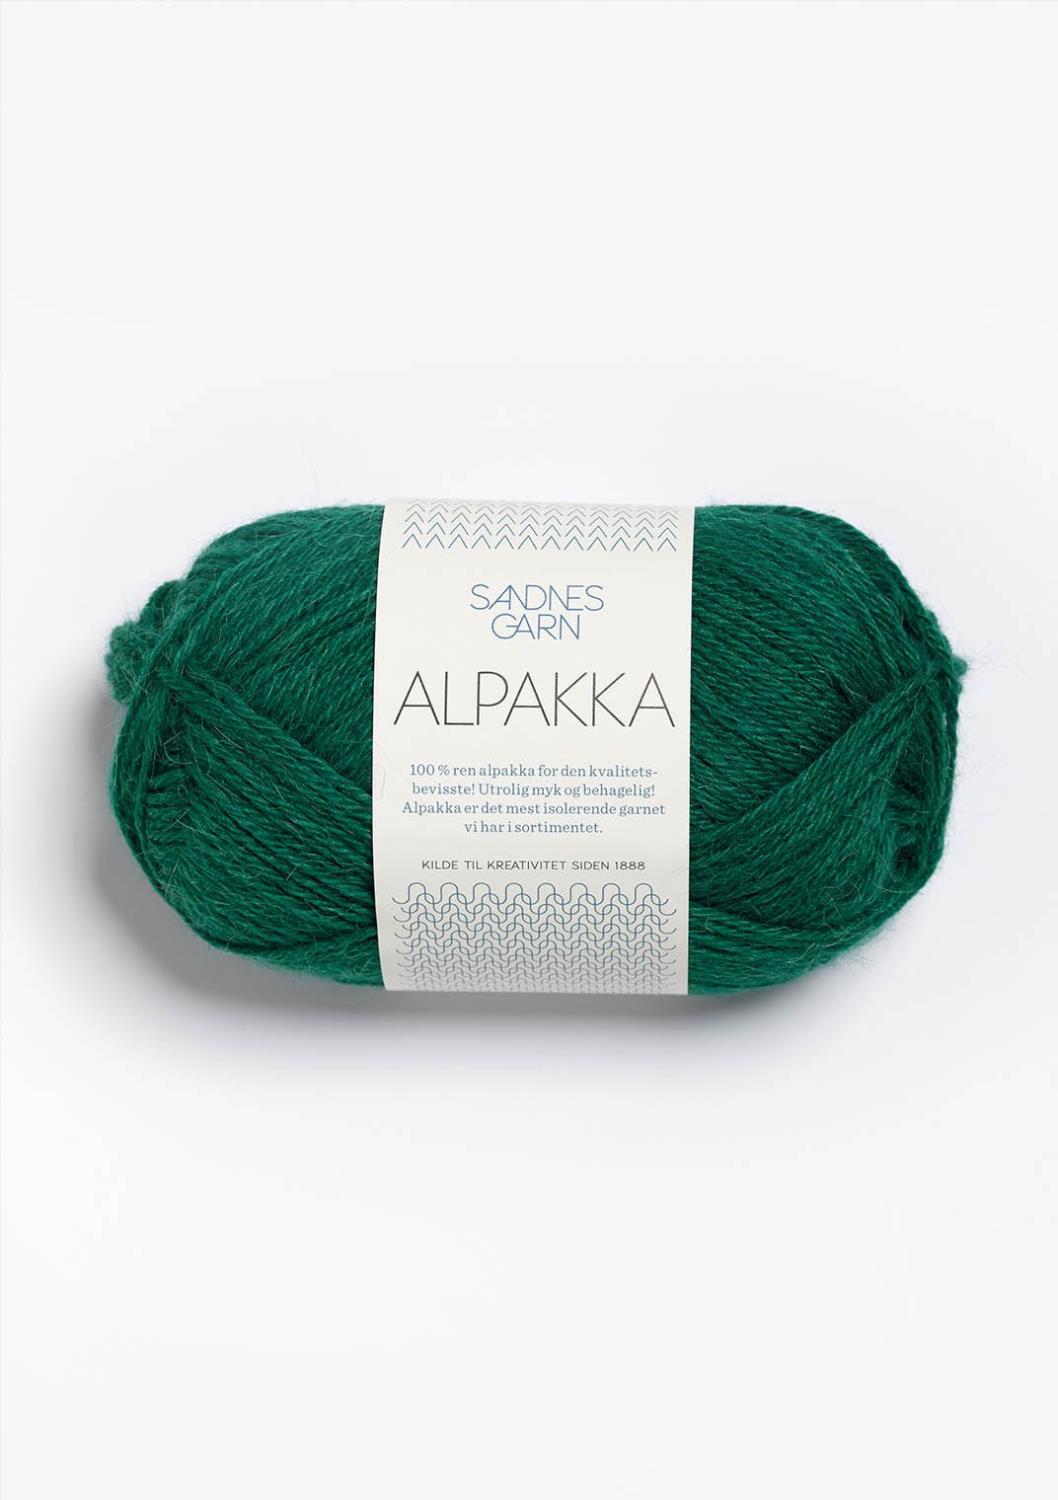 Alpakka Sandnes 7755 - Smaragd